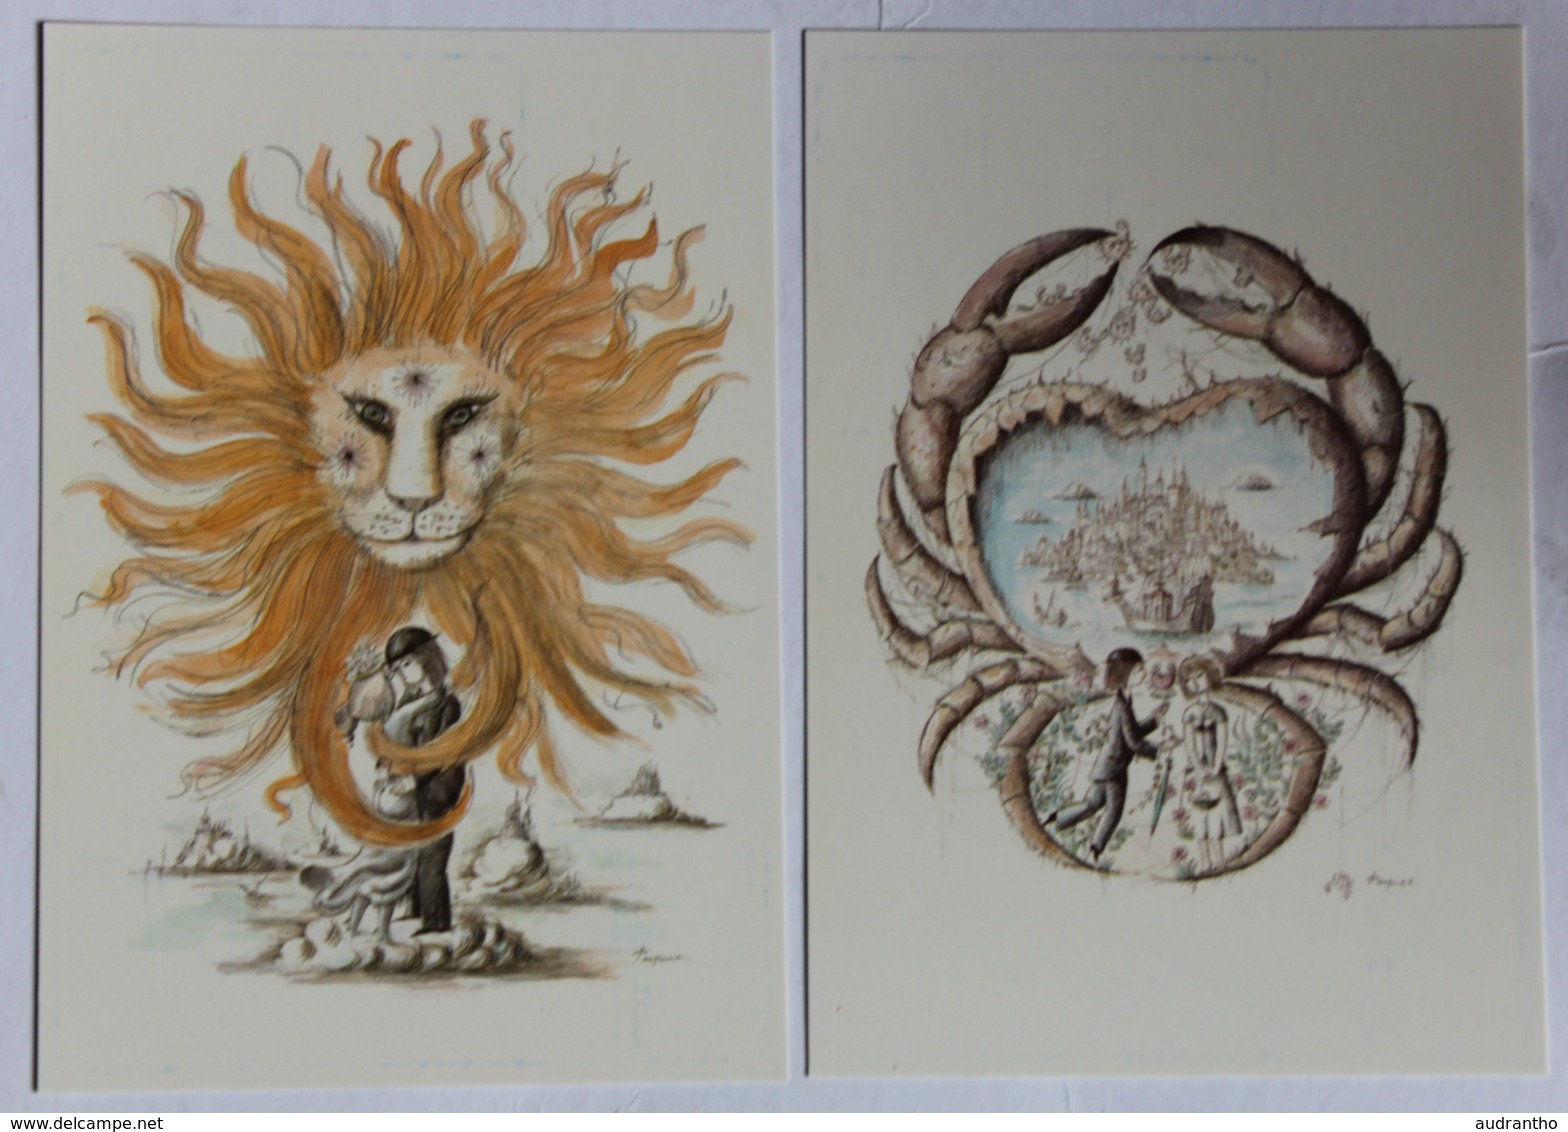 lot de 12 cartes postales illustrateur Peynet les signes du zodiaque astrologie Balance scorpion Lion Cancer